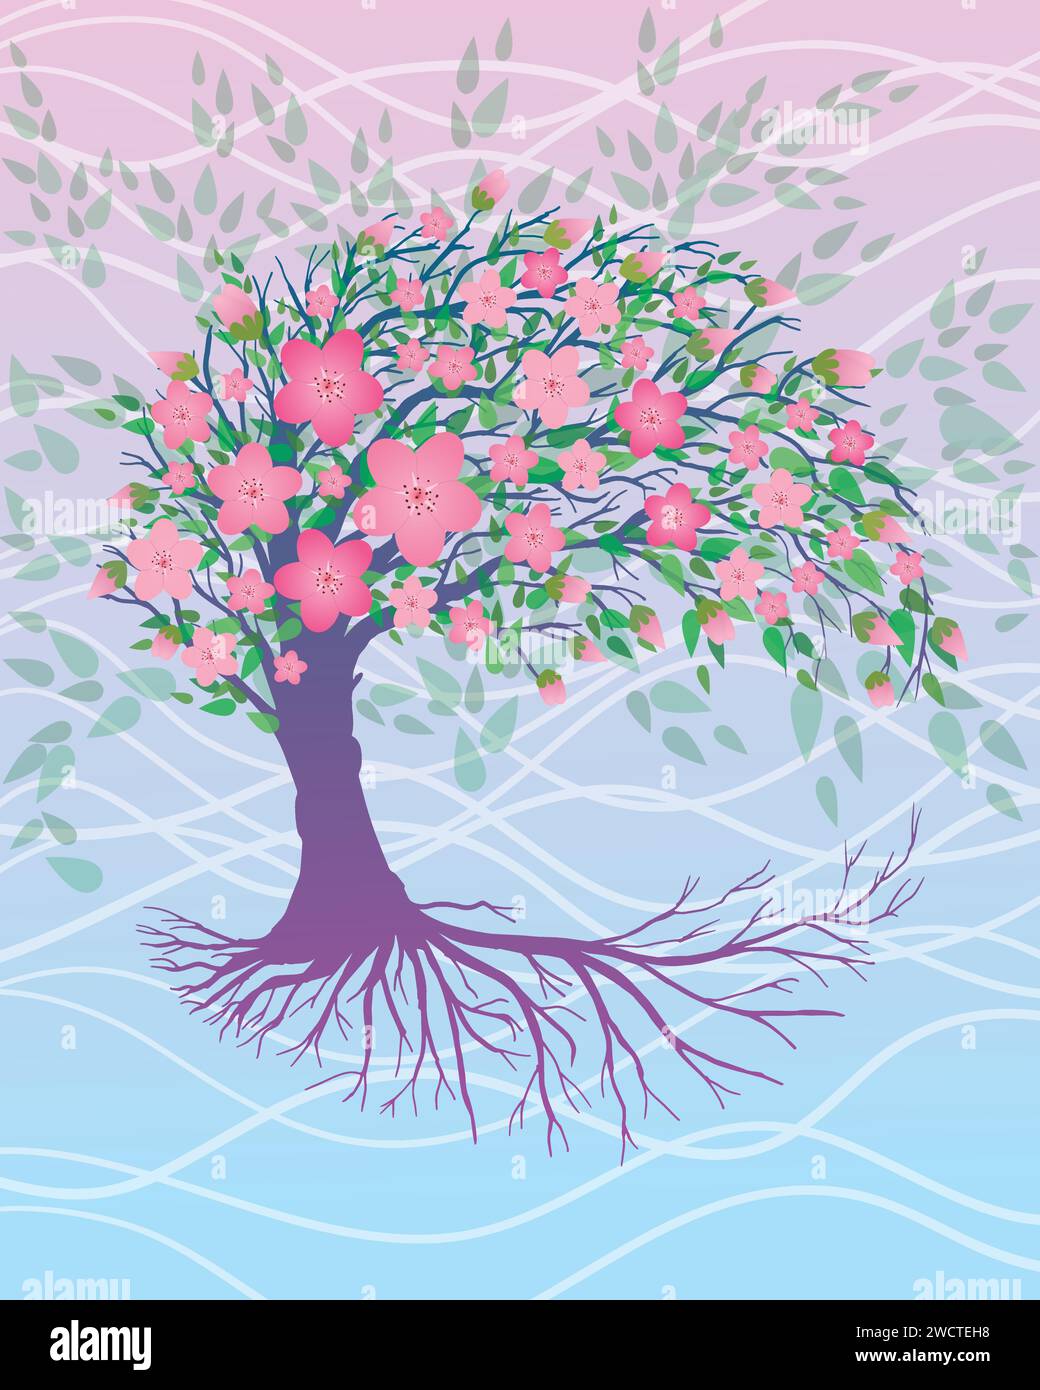 Un albero di vita rosa o yggdrasil con fiori di fiori rosa. L'albero è di colore rosa e blu. Lo sfondo è di colore blu e rosa. Illustrazione Vettoriale